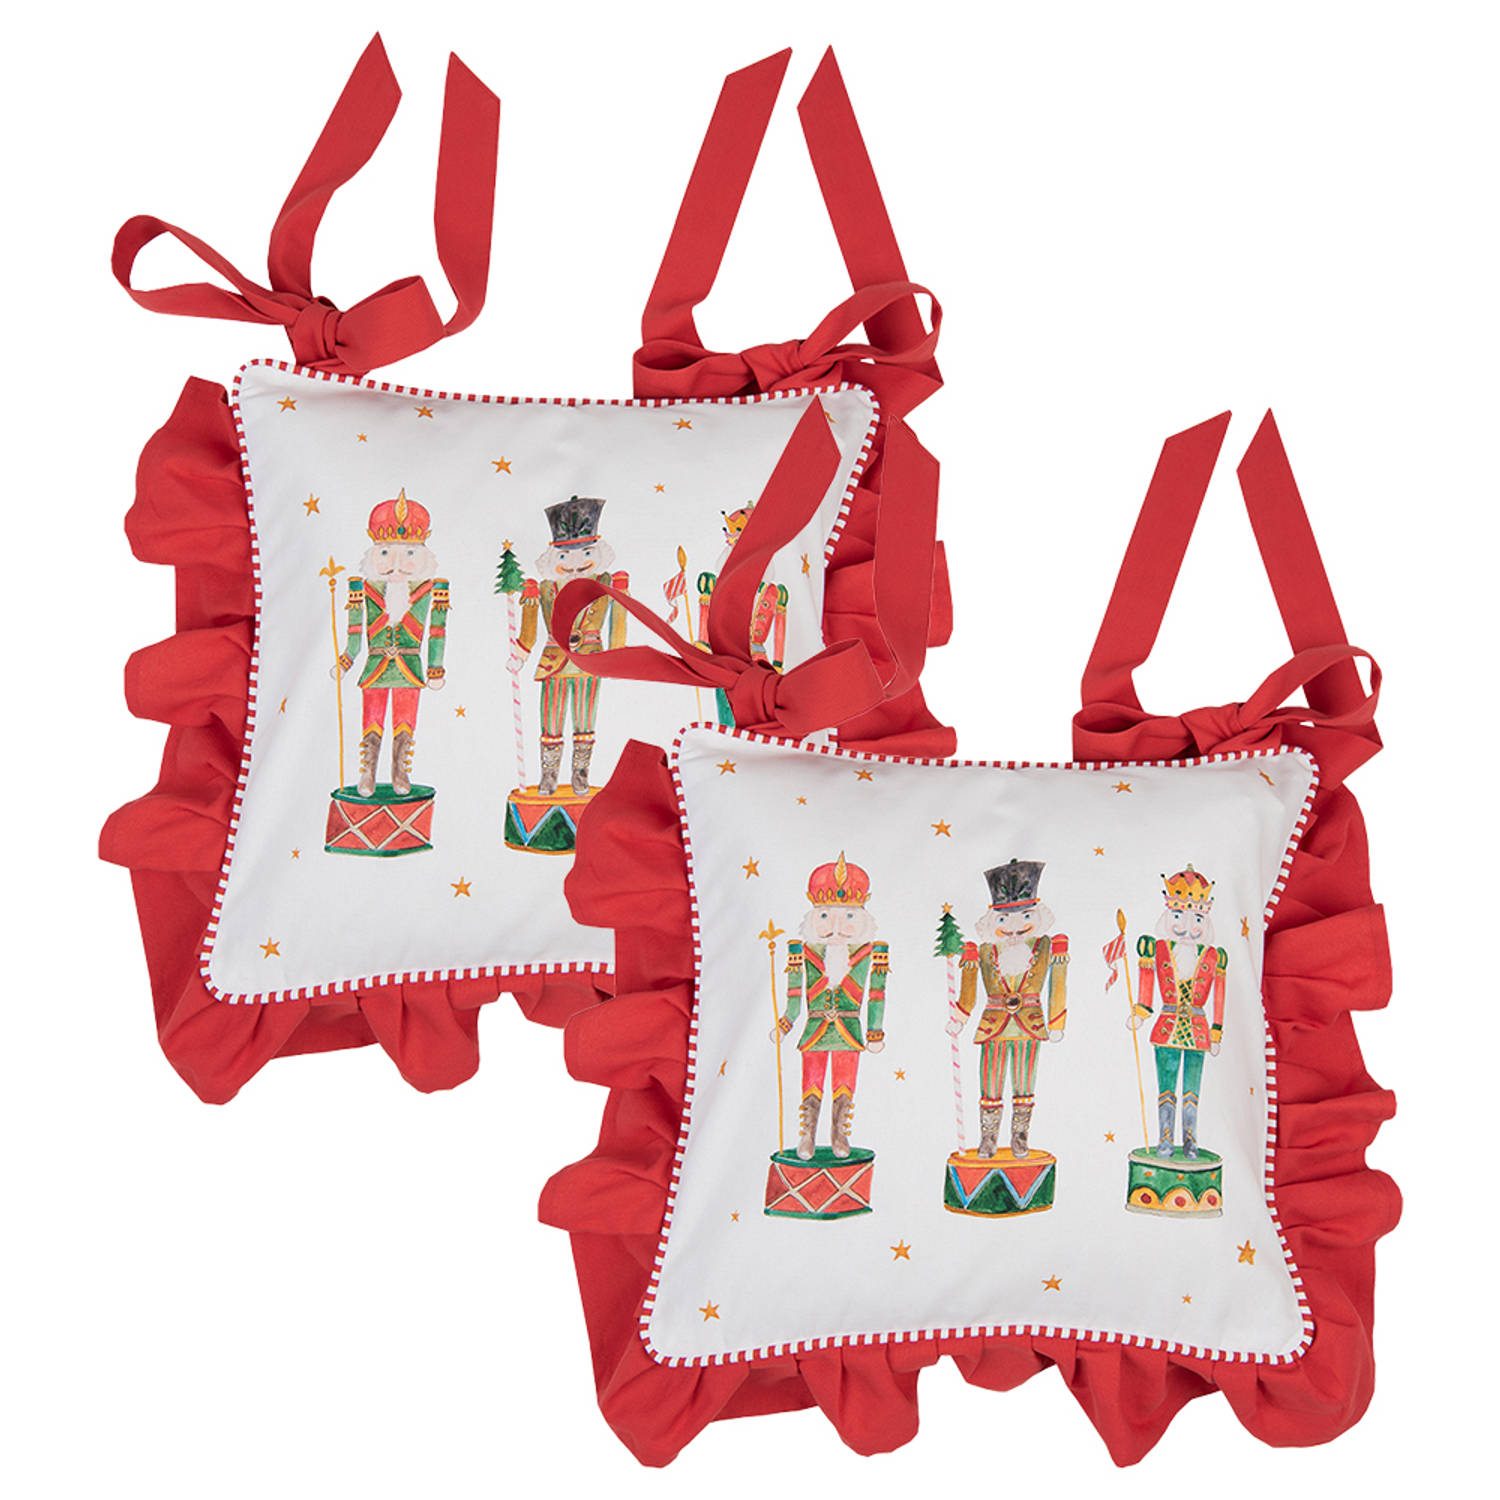 HAES DECO - Set van 2 Sierkussenhoezen - formaat 40x40 cm - kleuren Wit / Rood / Groen / Bruin - van 100% Katoen - Collectie: Happy Little Christmas - Kerst Sierkussen, Kussenhoes,